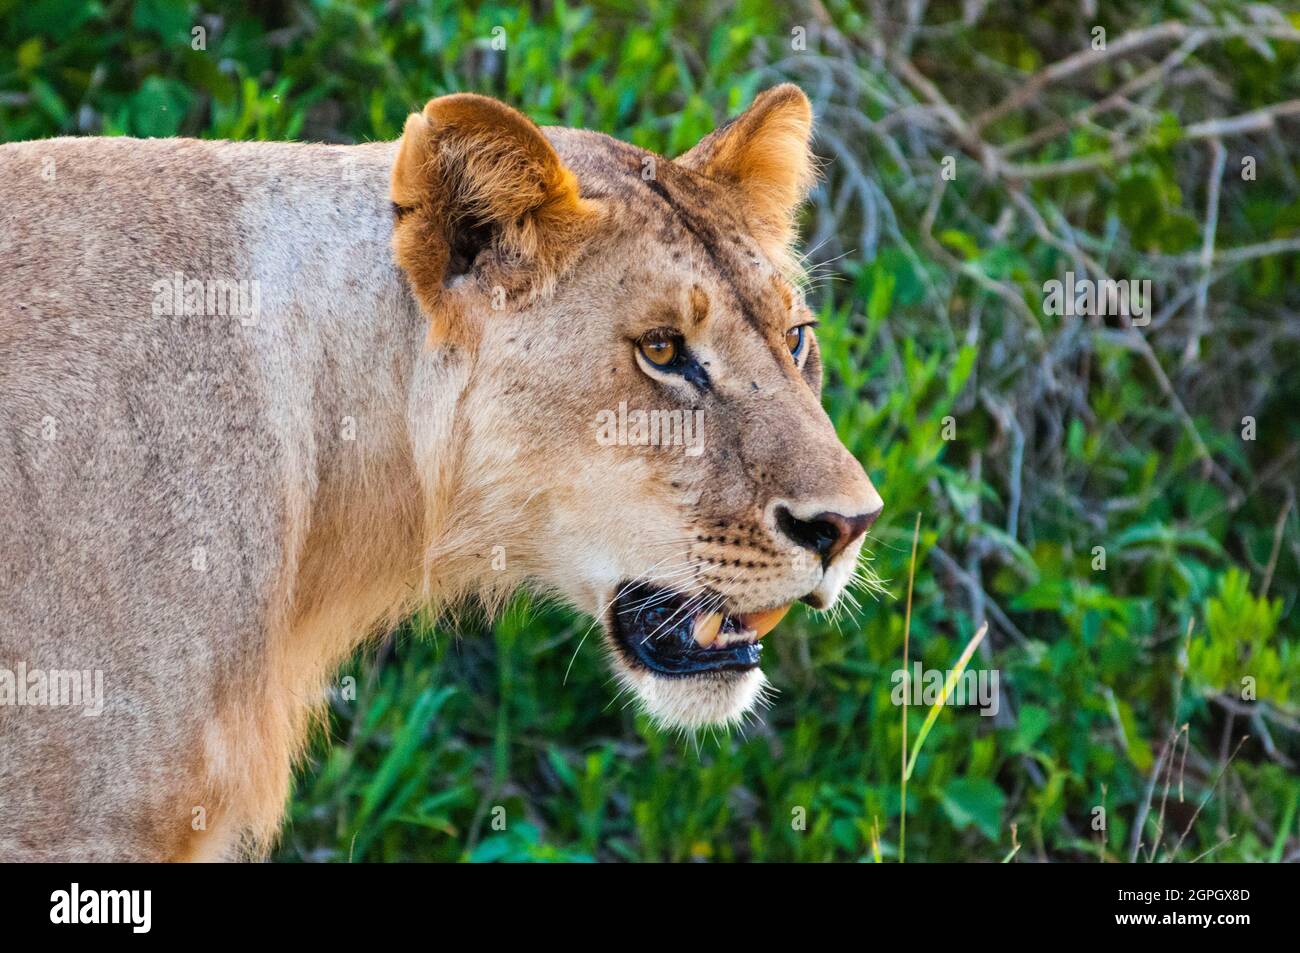 Kenya, parc national de Tsavo East, un jeune lion mâle (Panthera leo) Banque D'Images